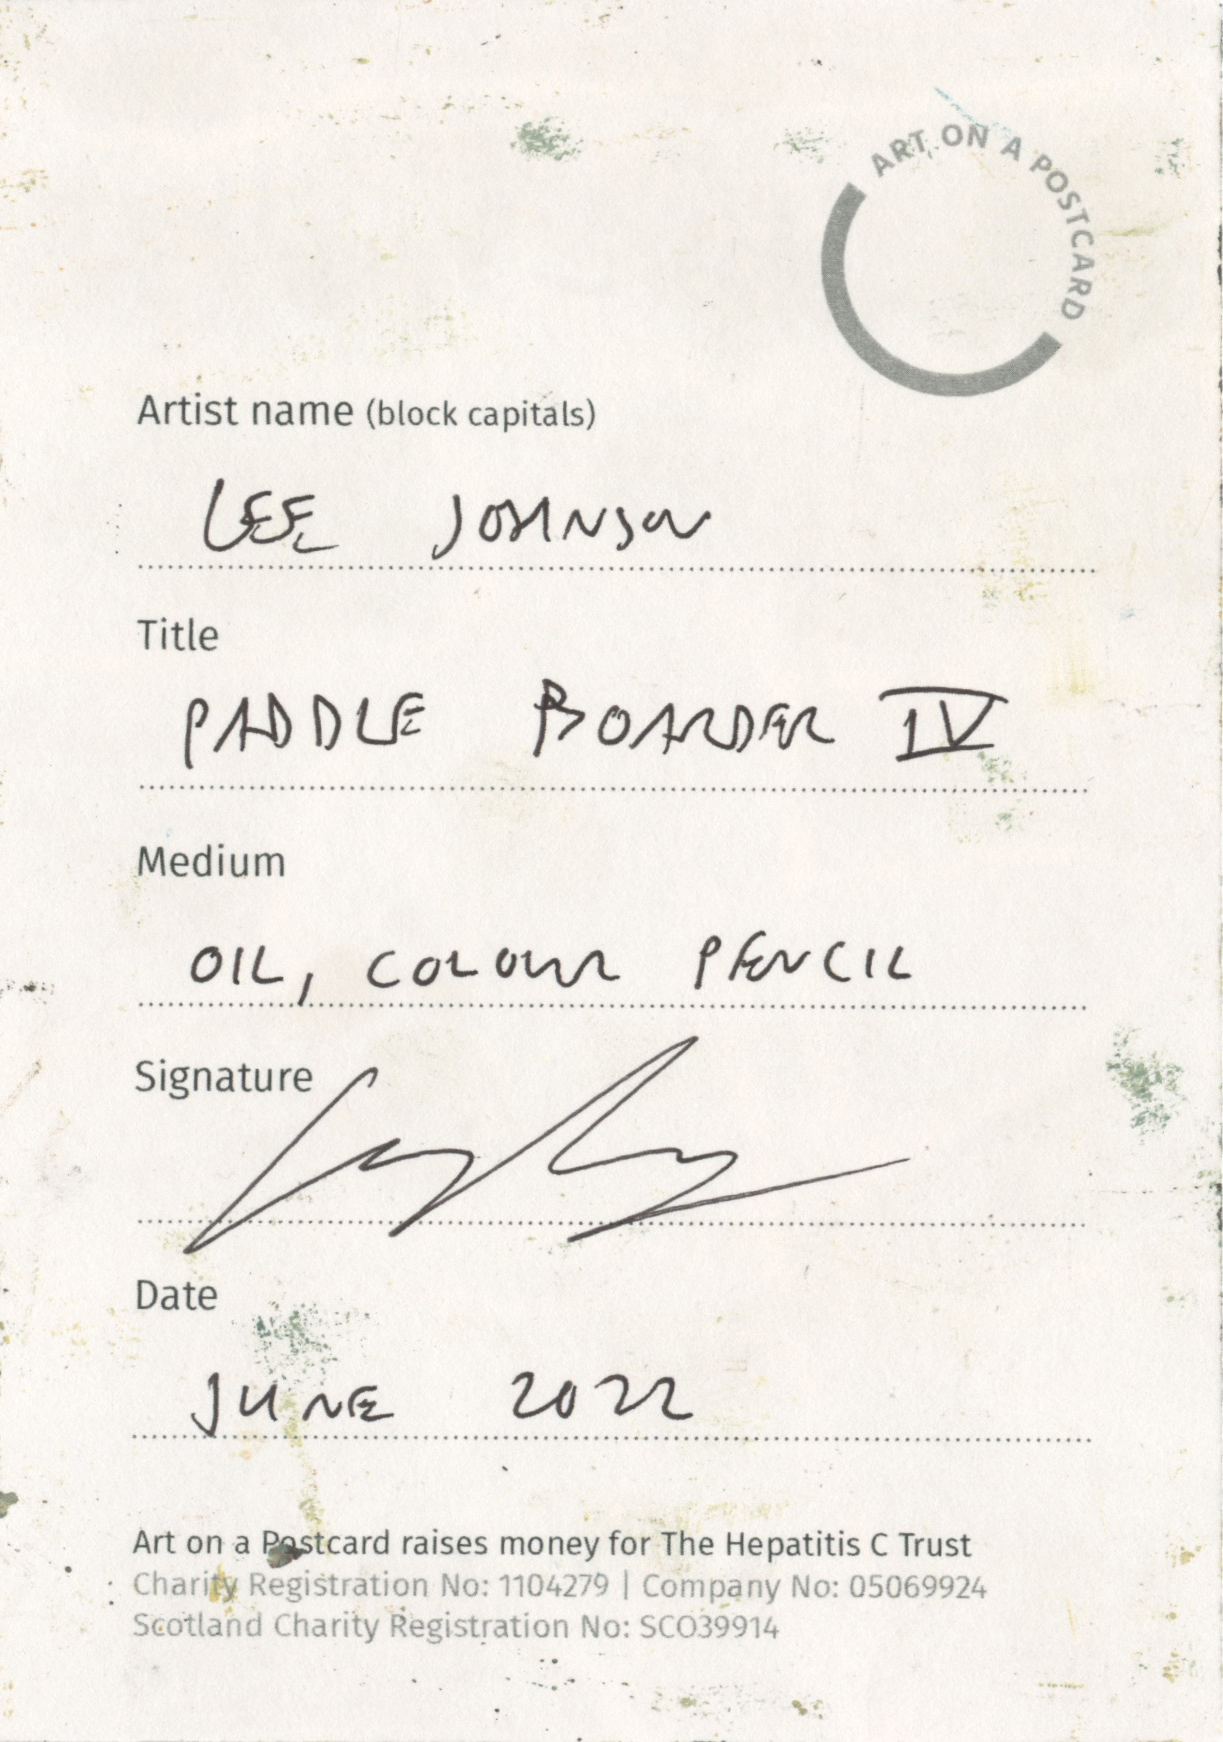 14. Lee Johnson - Paddle Boarder IV - BACK